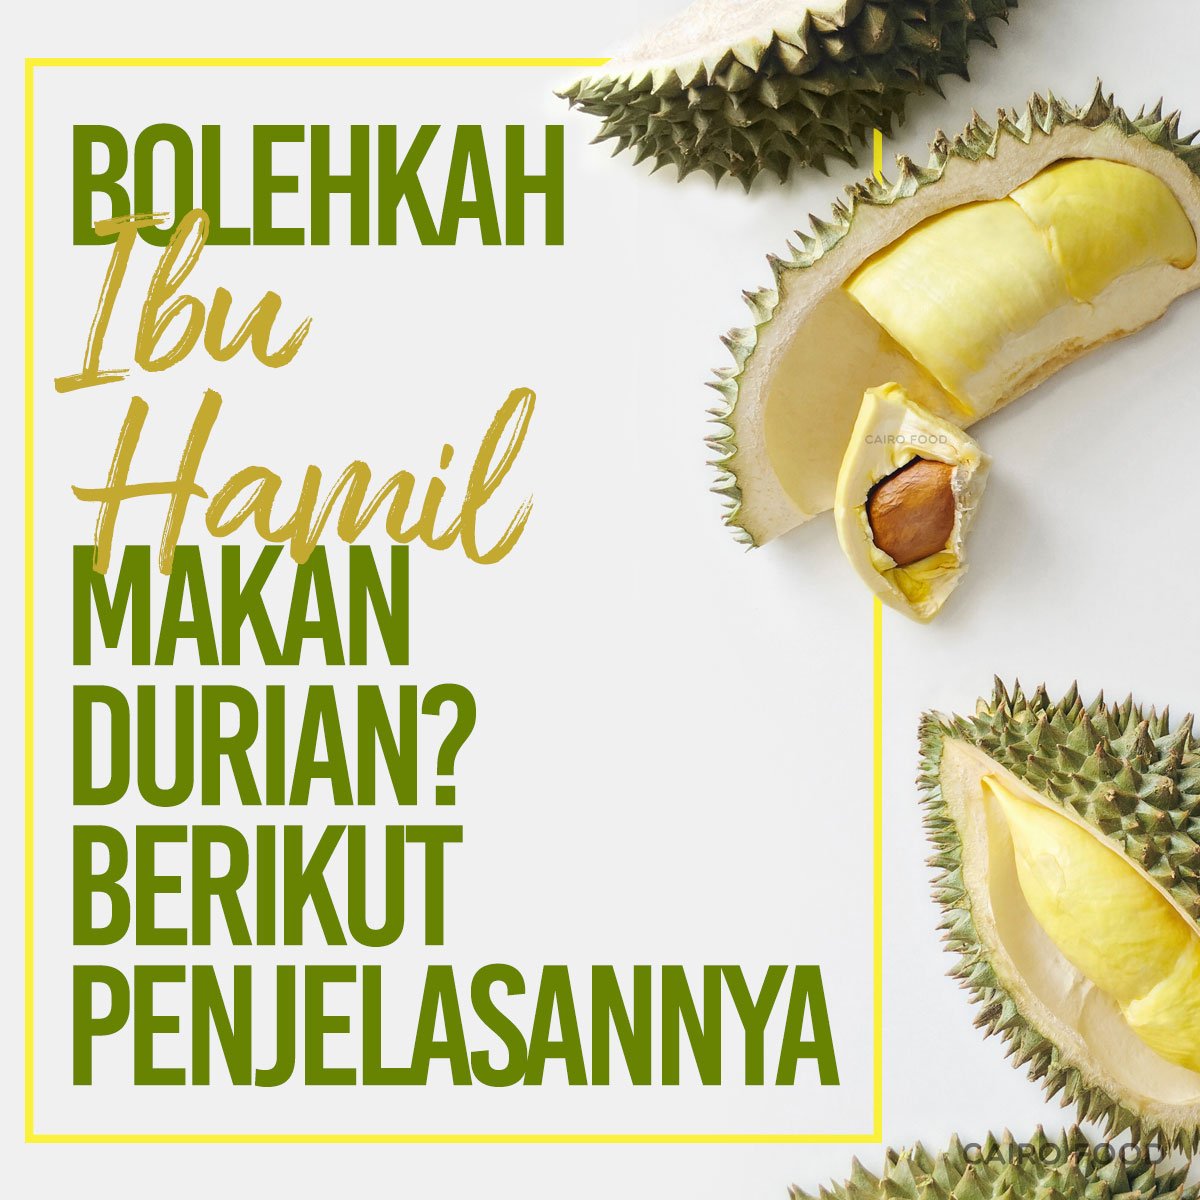 Bolehkah Ibu Hamil Makan Durian? Berikut Penjelasannya